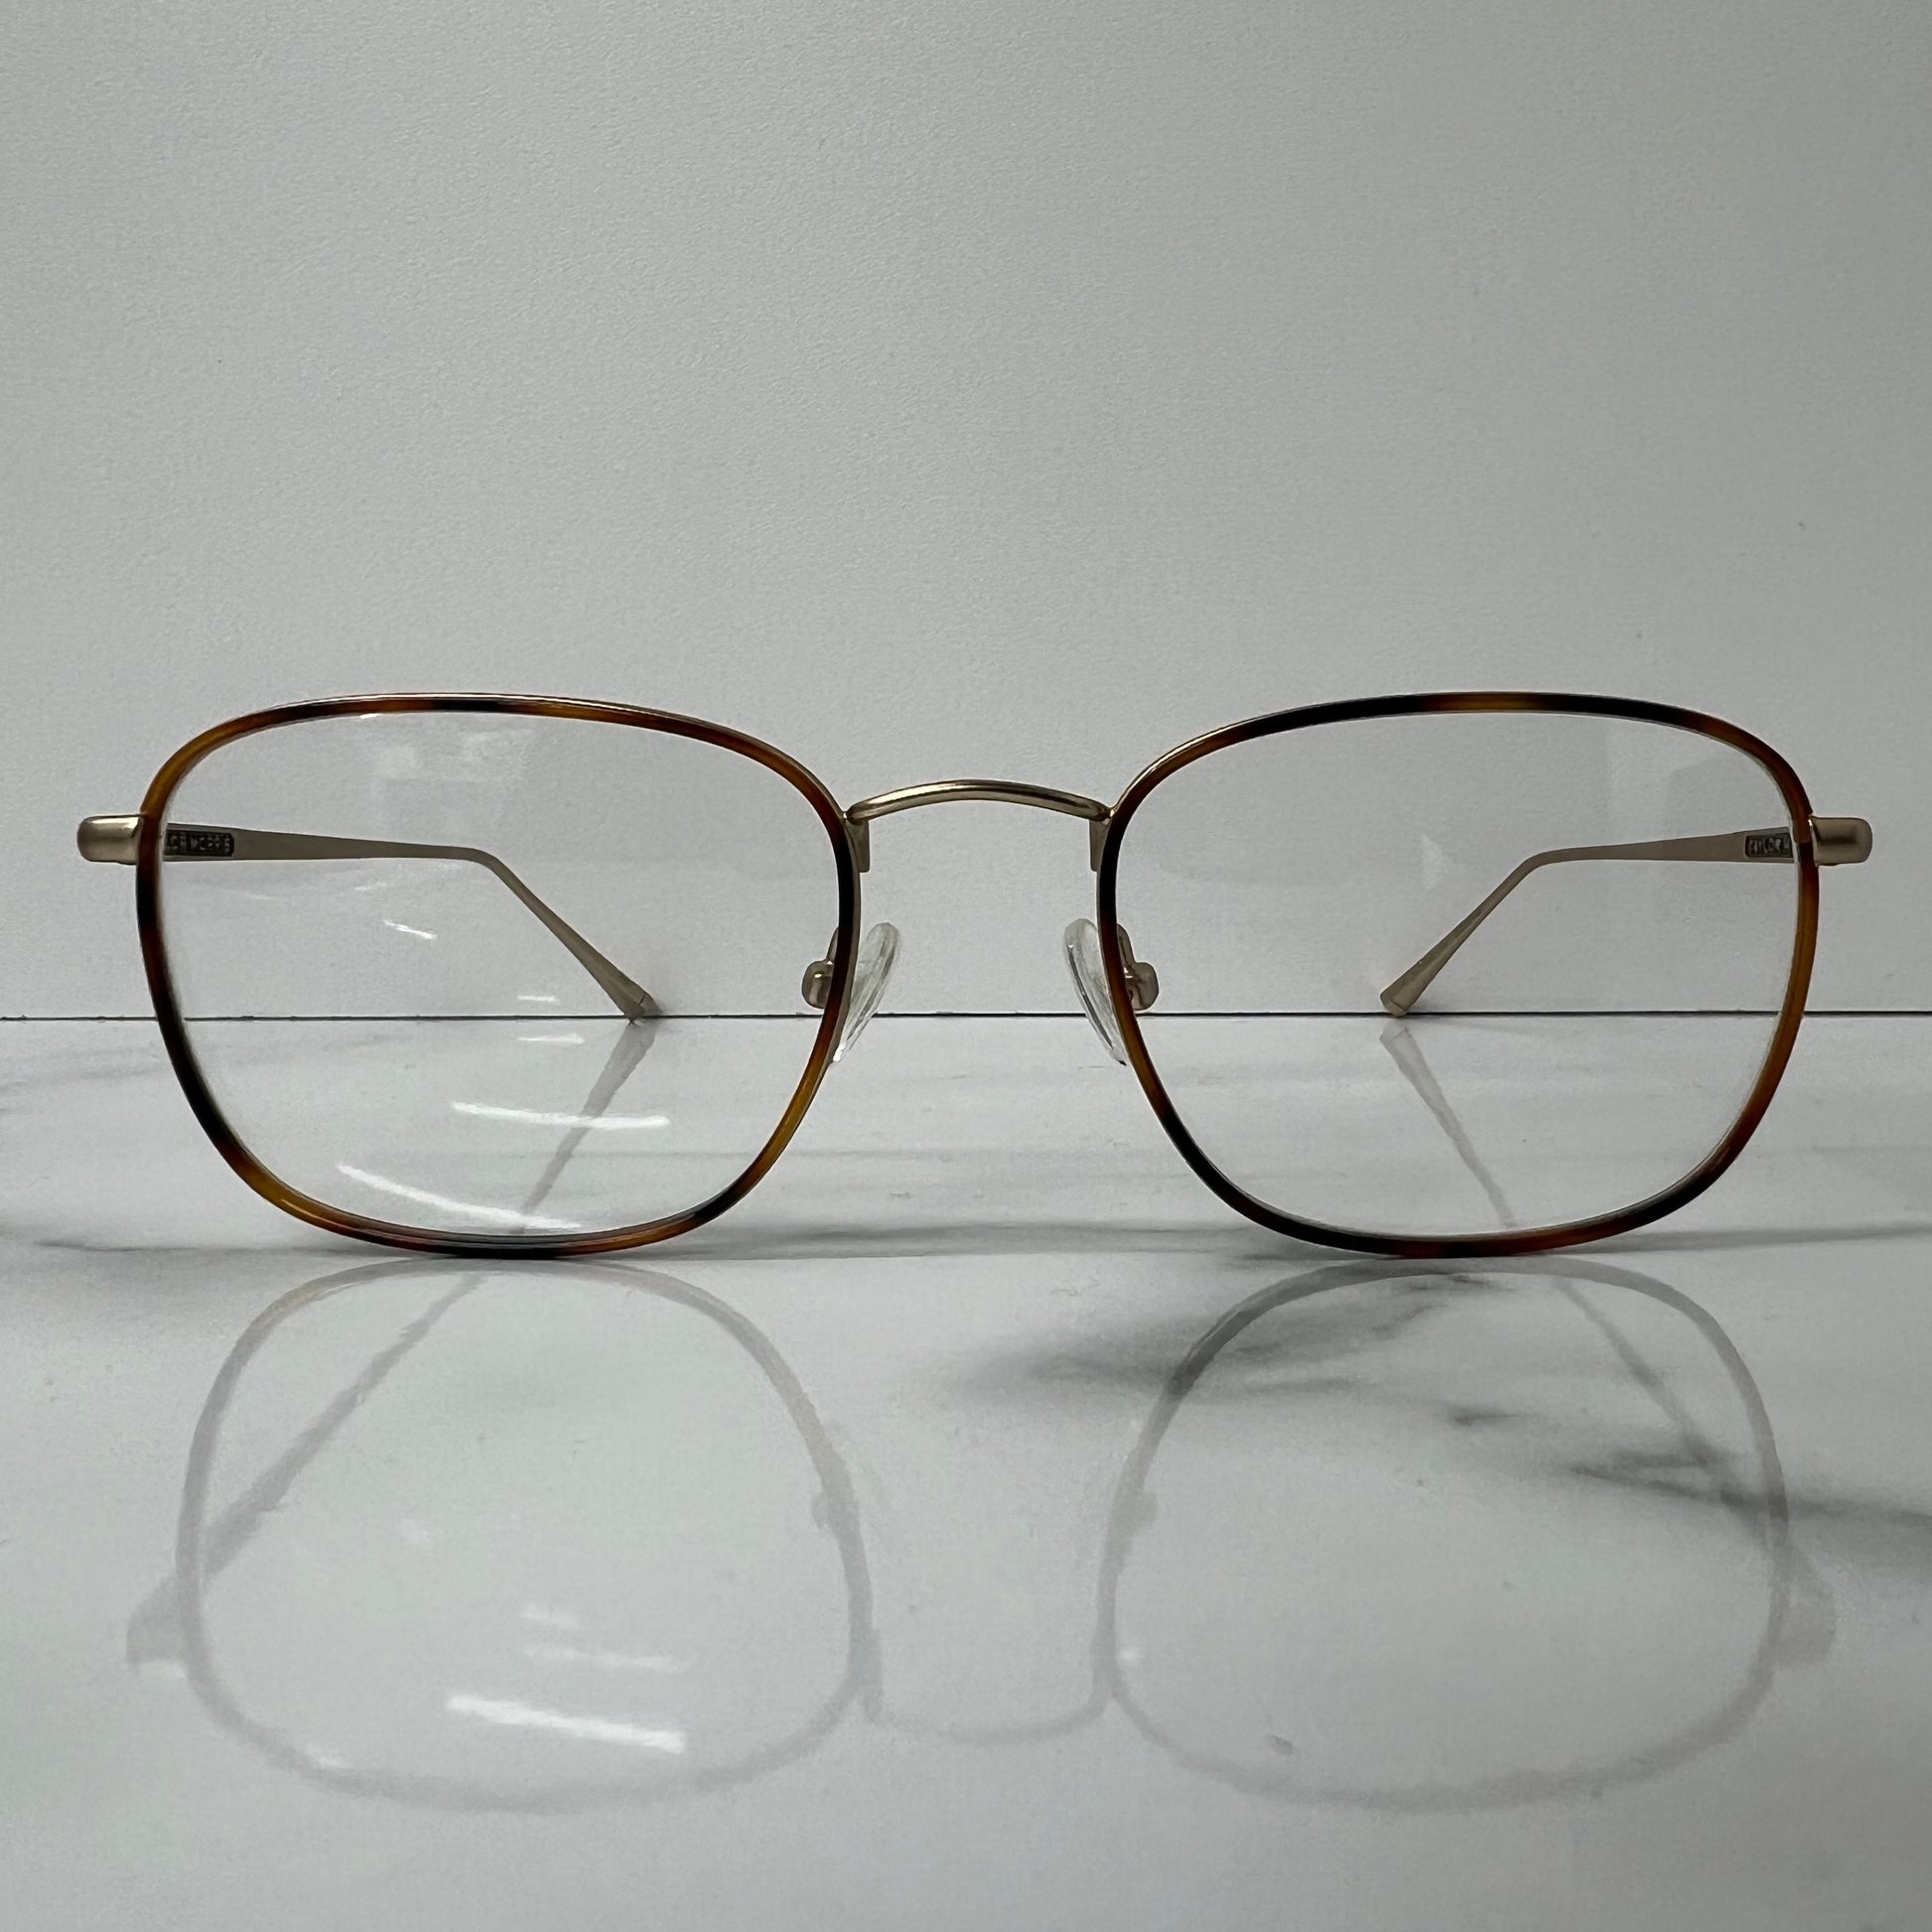 Taylor Morris SW8 C4 Prescription Optical Glasses